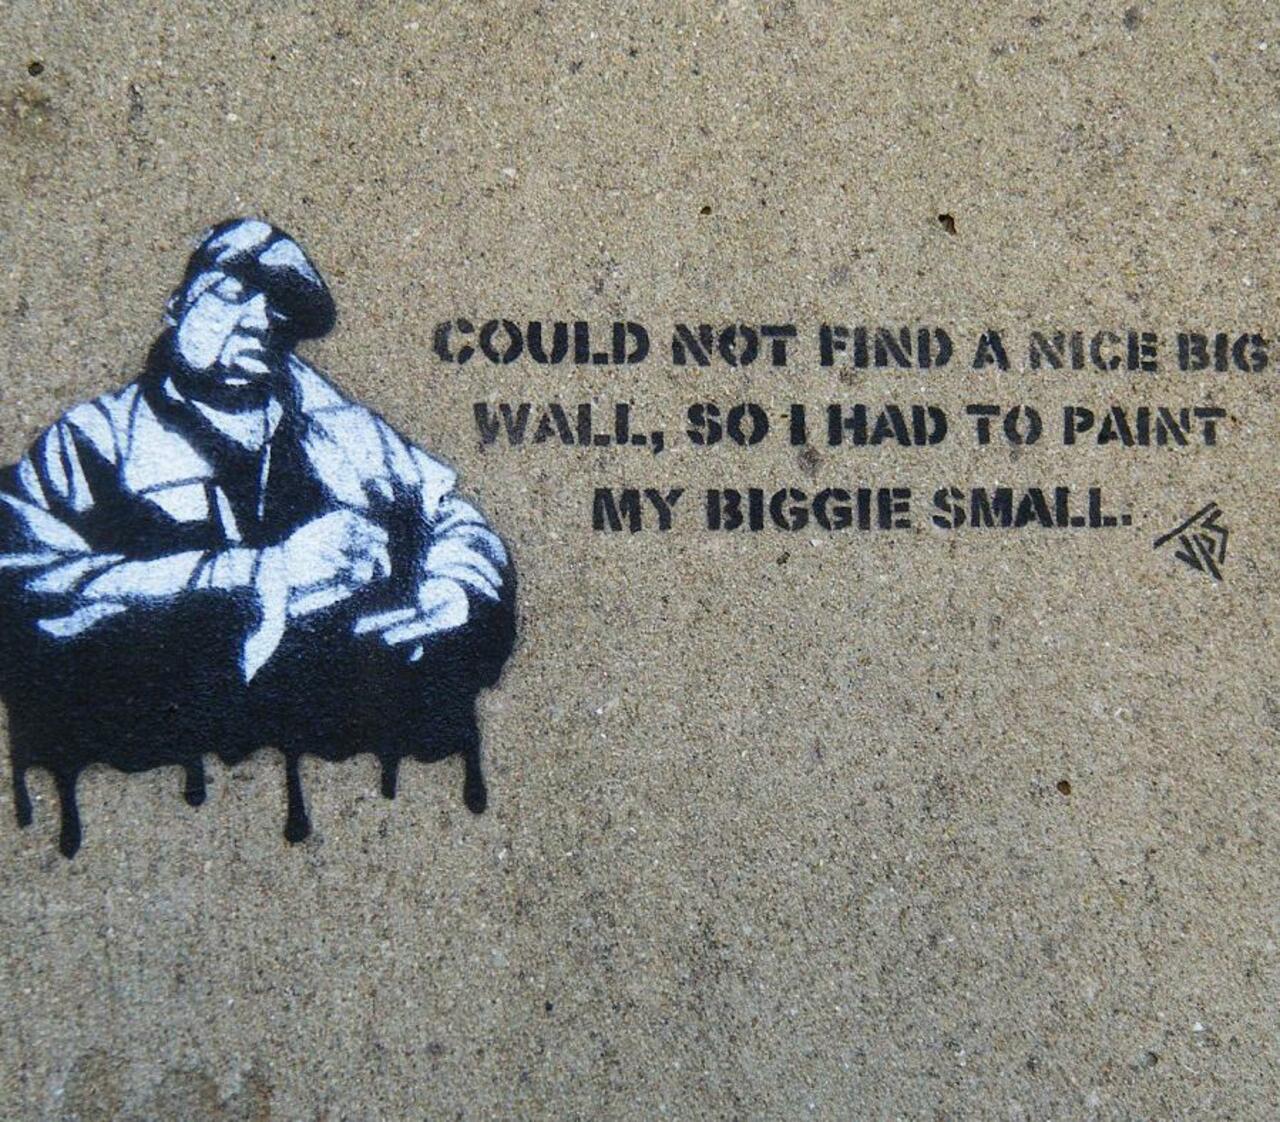 Love the work of JPS! #biggie  #biggiesmalls #stencilart #streetart #graffiti #streetartberlin #streetartparis #str… http://t.co/DPK6kVUvZz